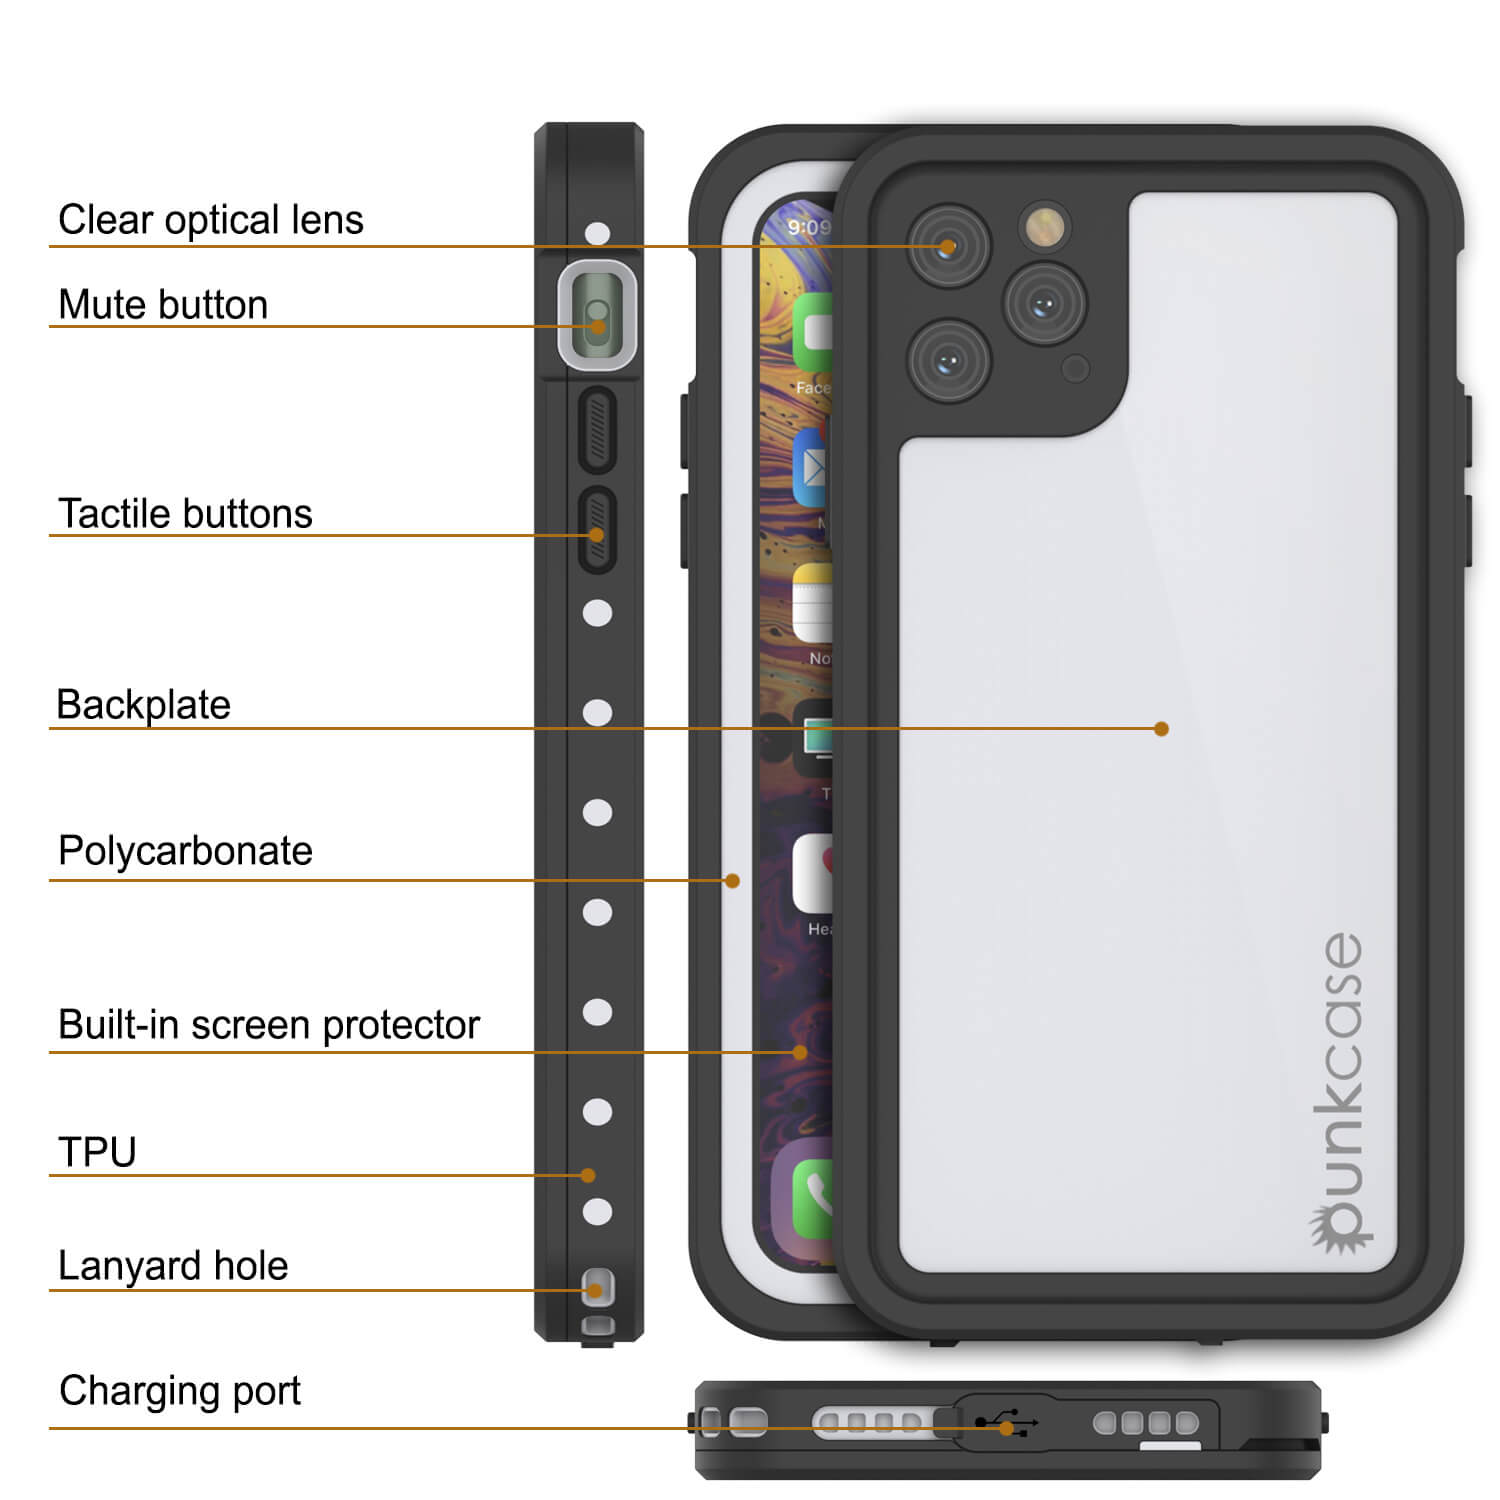 iPhone 11 Pro Waterproof IP68 Case, Punkcase [White] [StudStar Series] [Slim Fit] [Dirtproof]